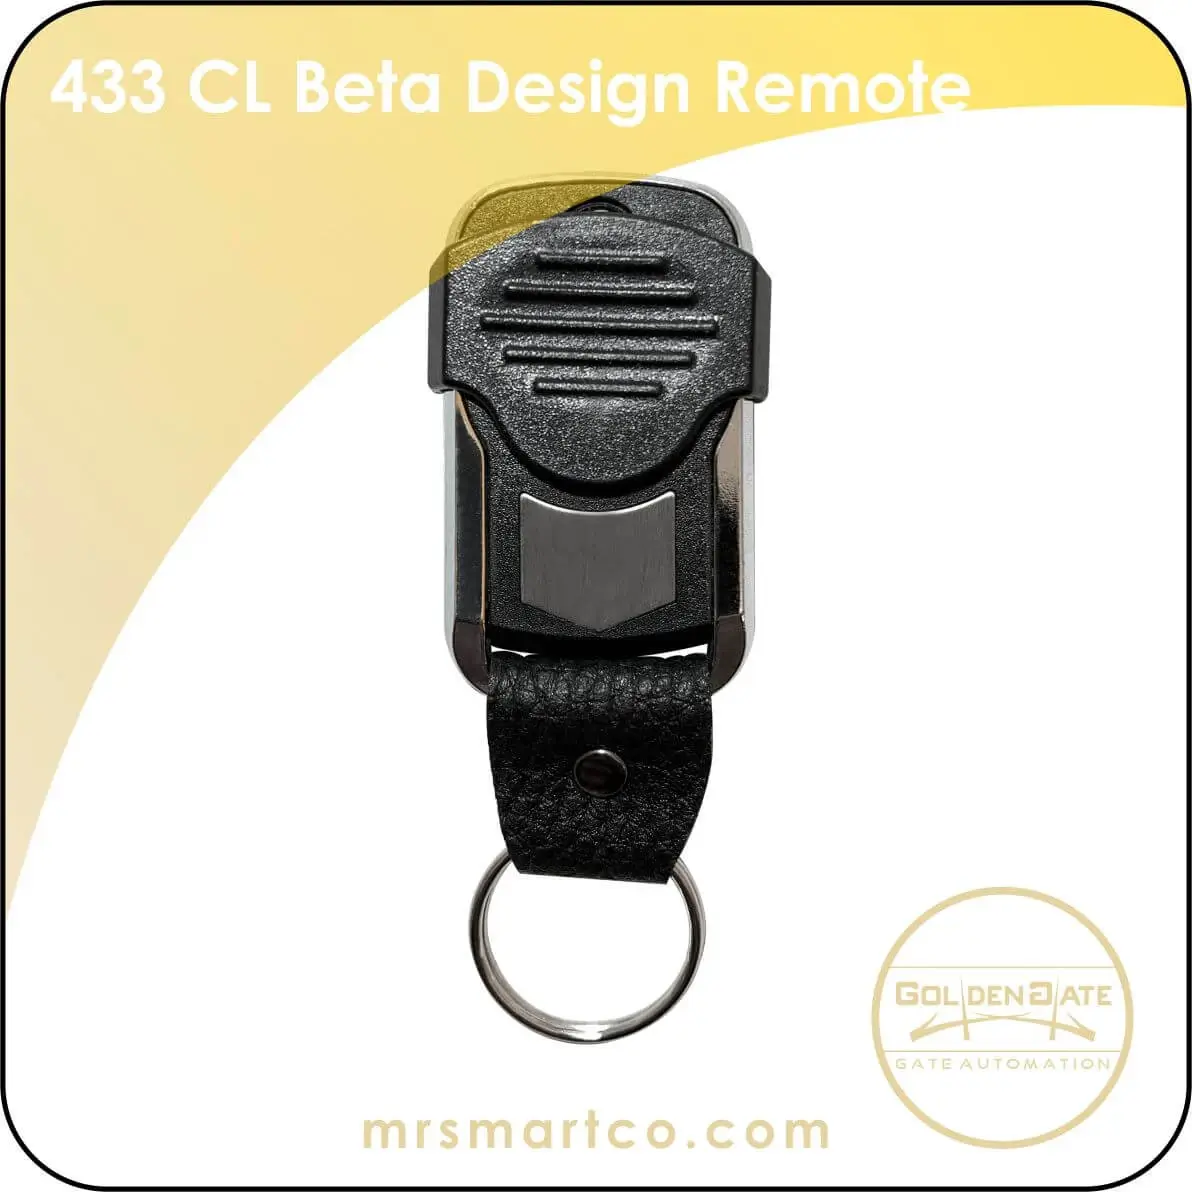 beta design remote 433 cl